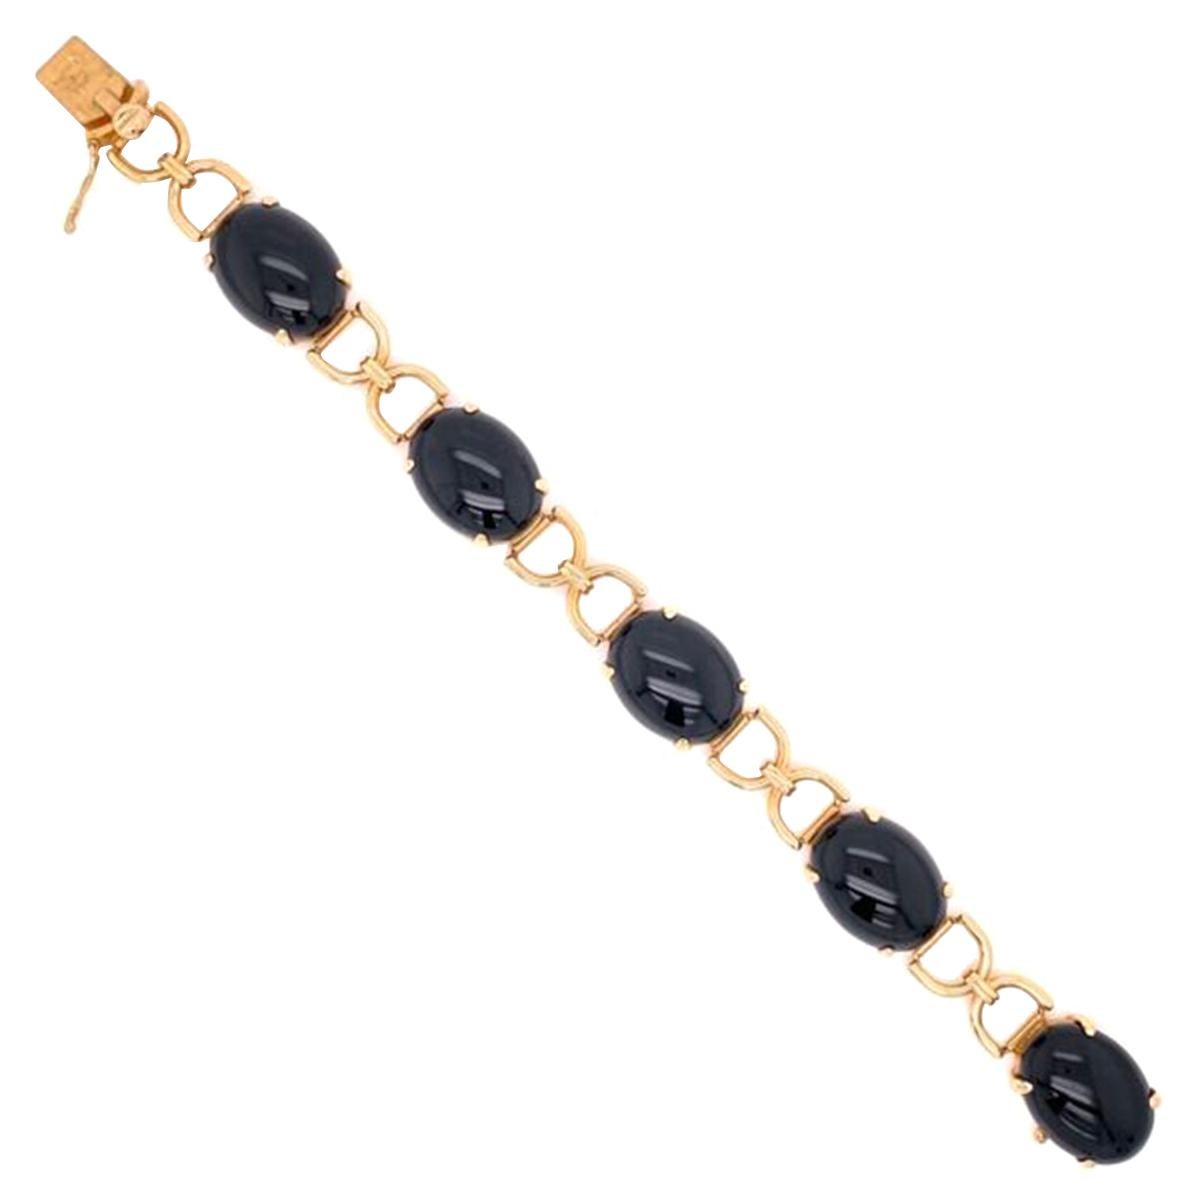 Vintage Gump's Black Jade Gold Link Bracelet Fine Estate Jewelry For Sale